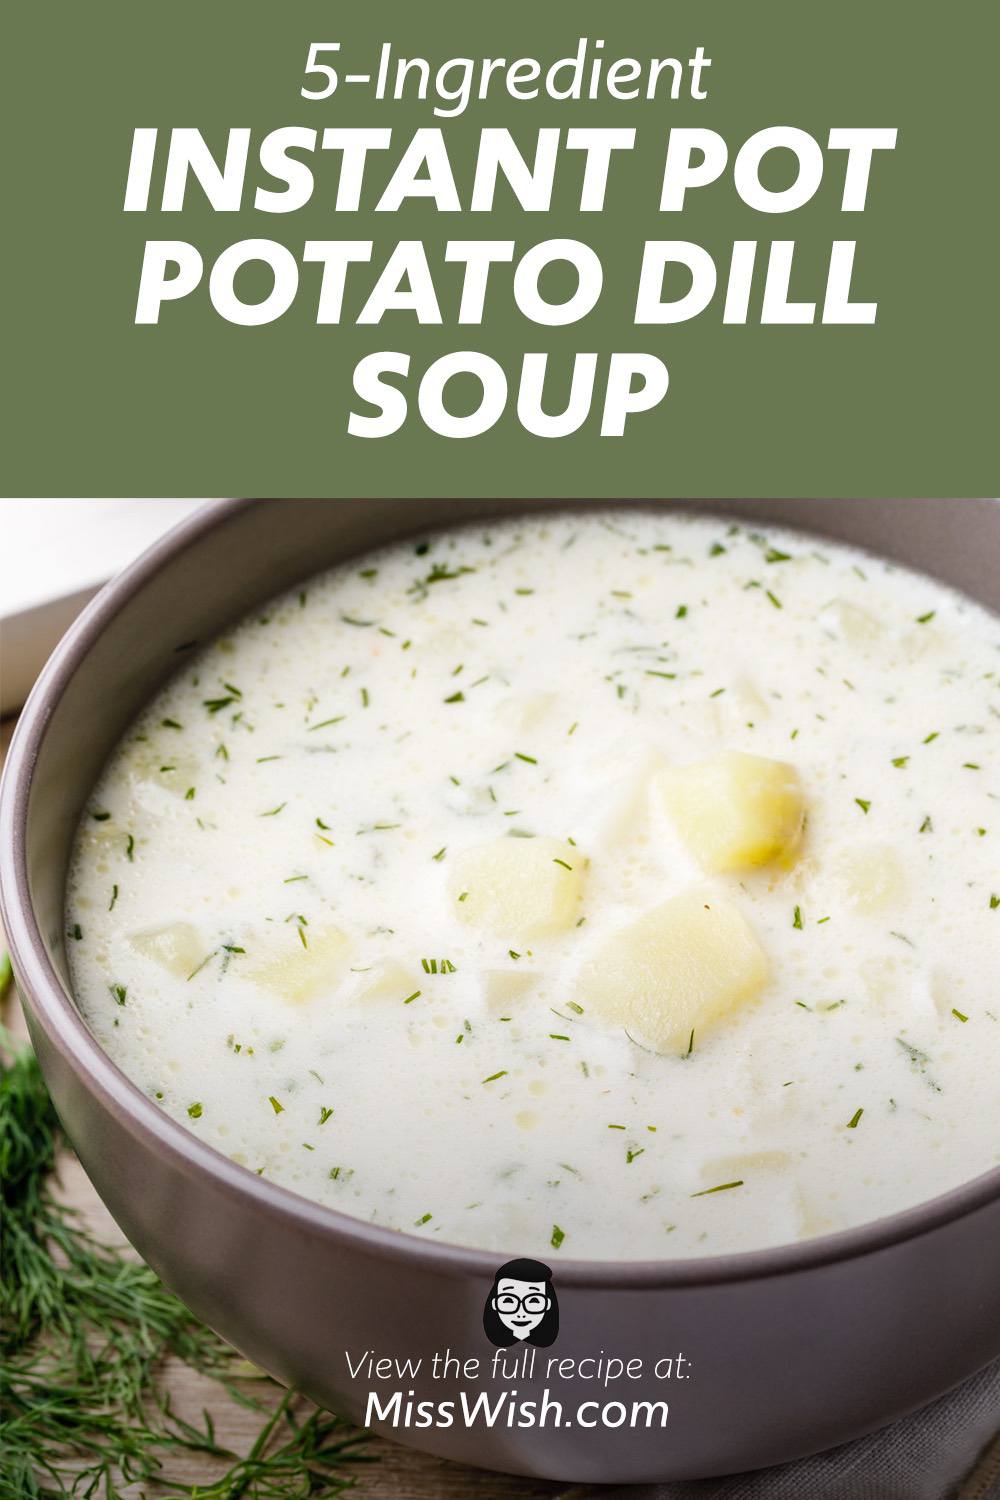 5-Ingredient Instant Pot Potato Dill Soup